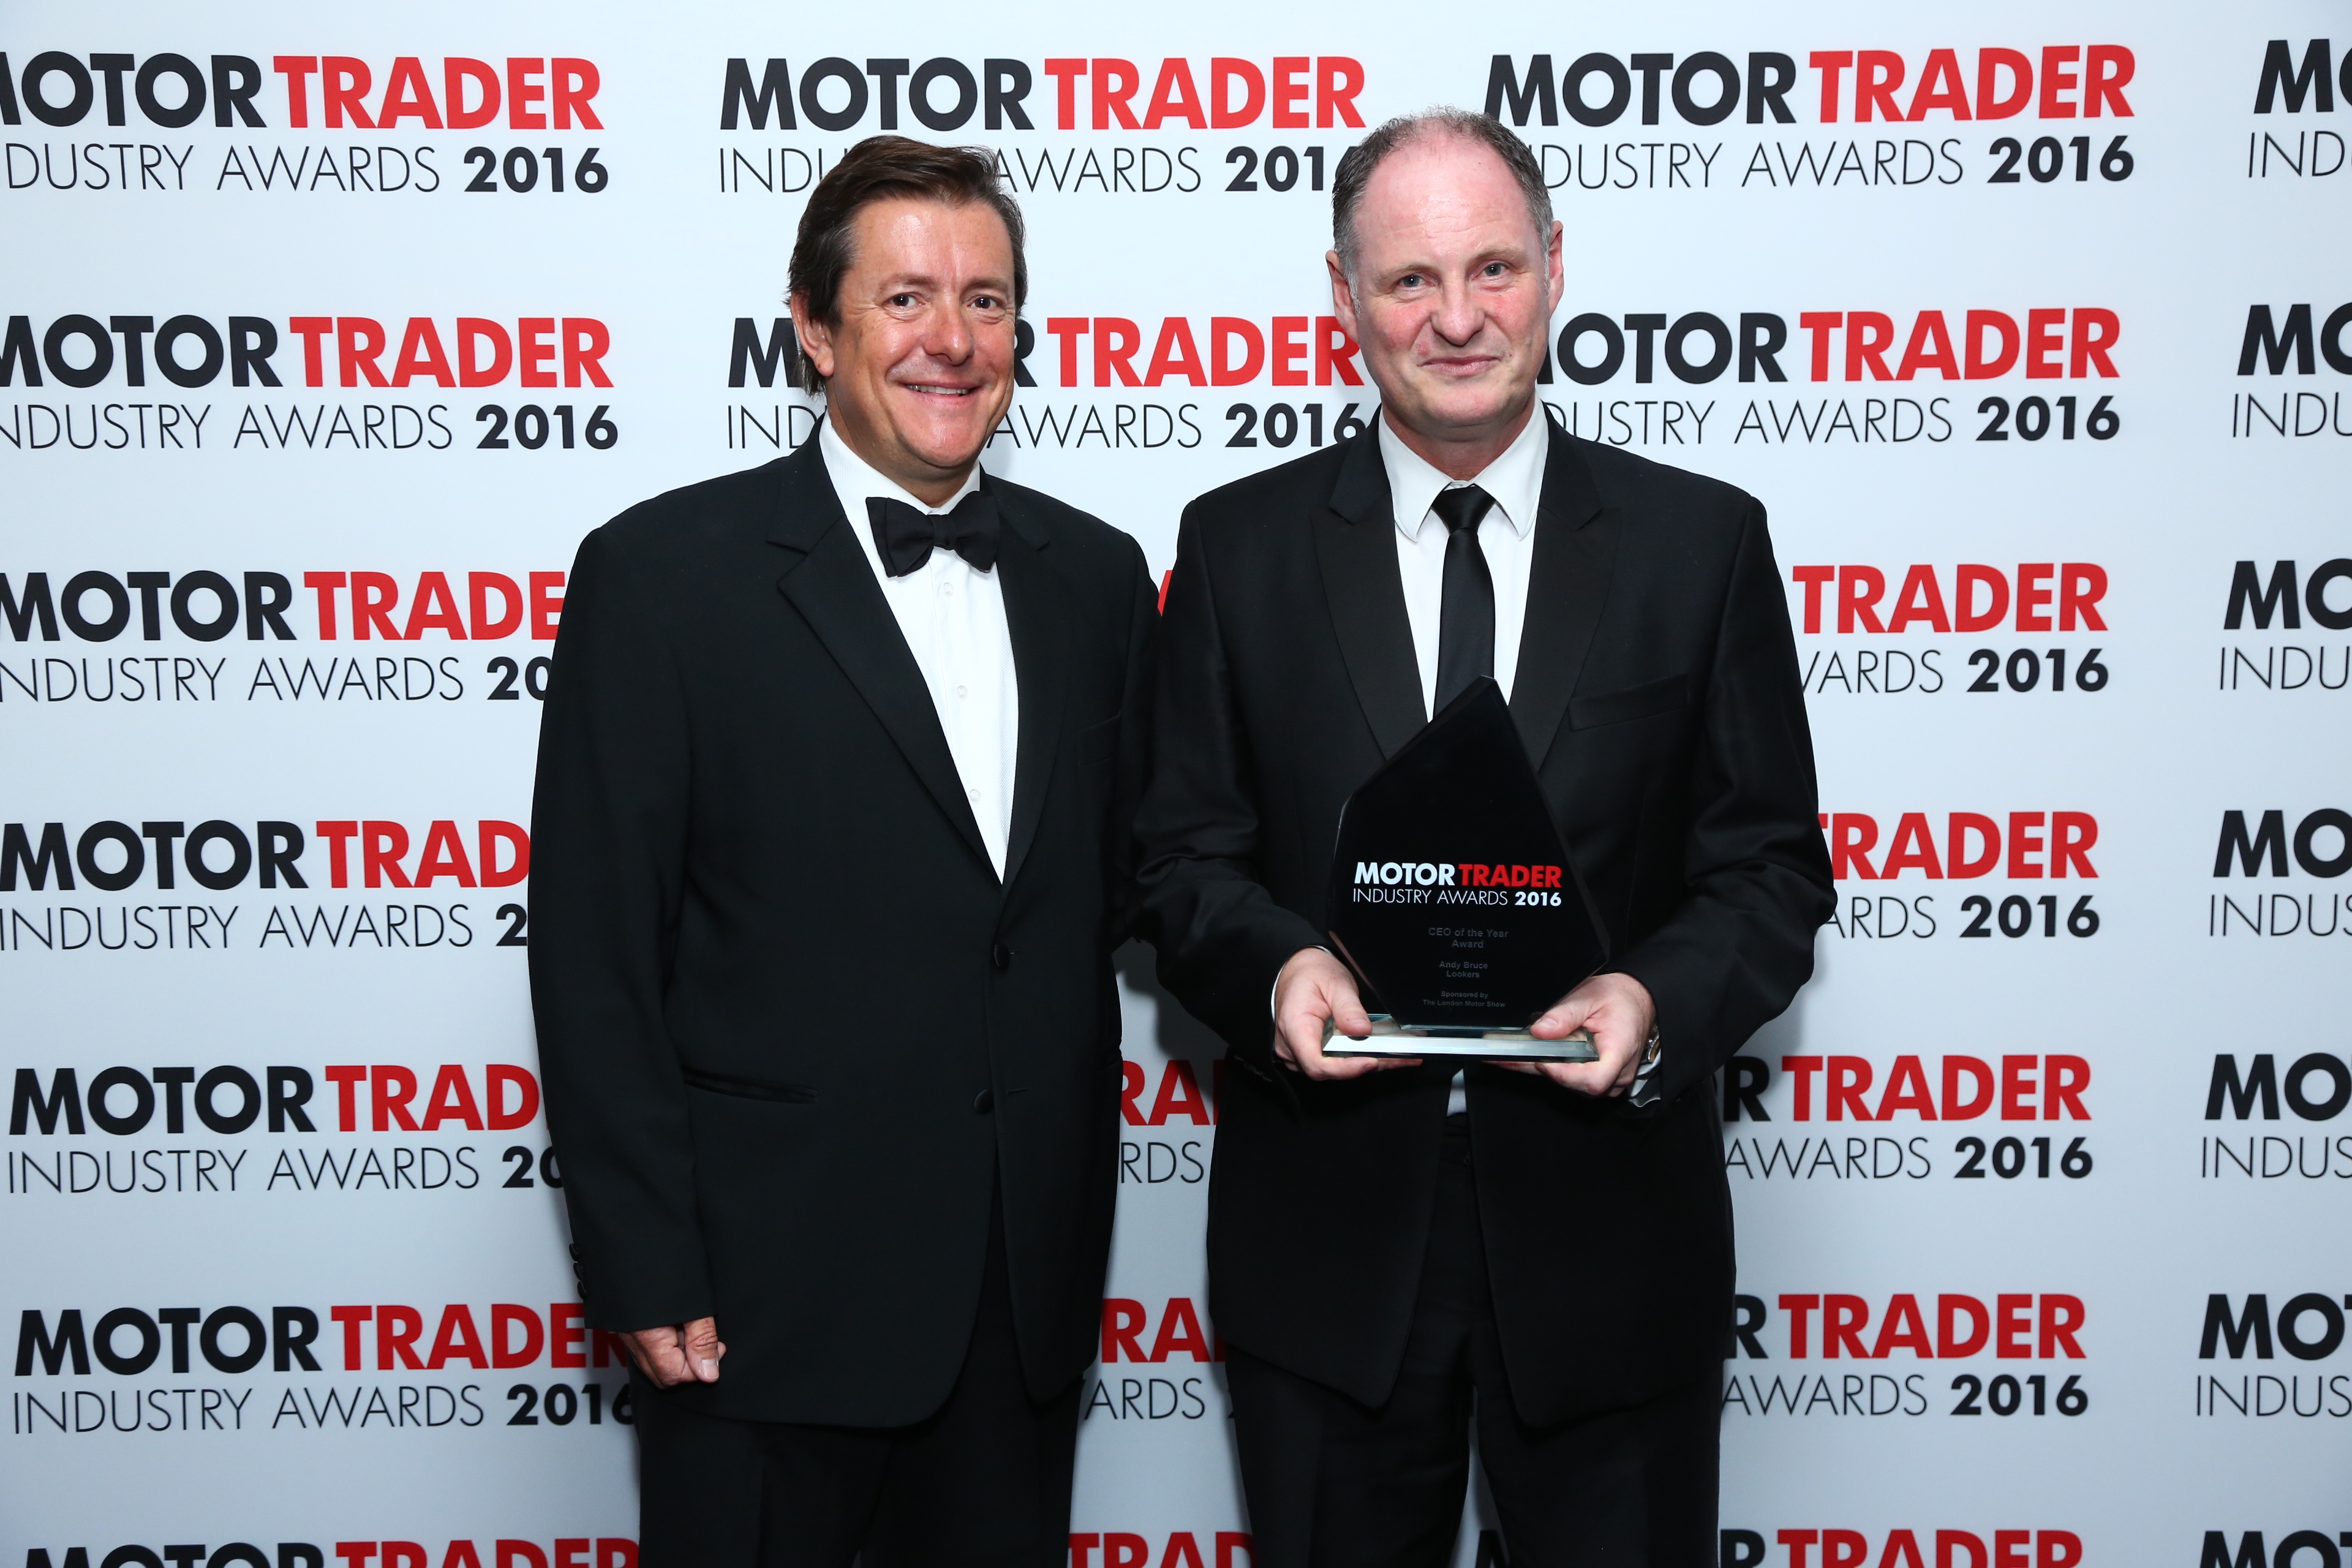 Andy Bruce receiving his award at the Motor Trader Awards